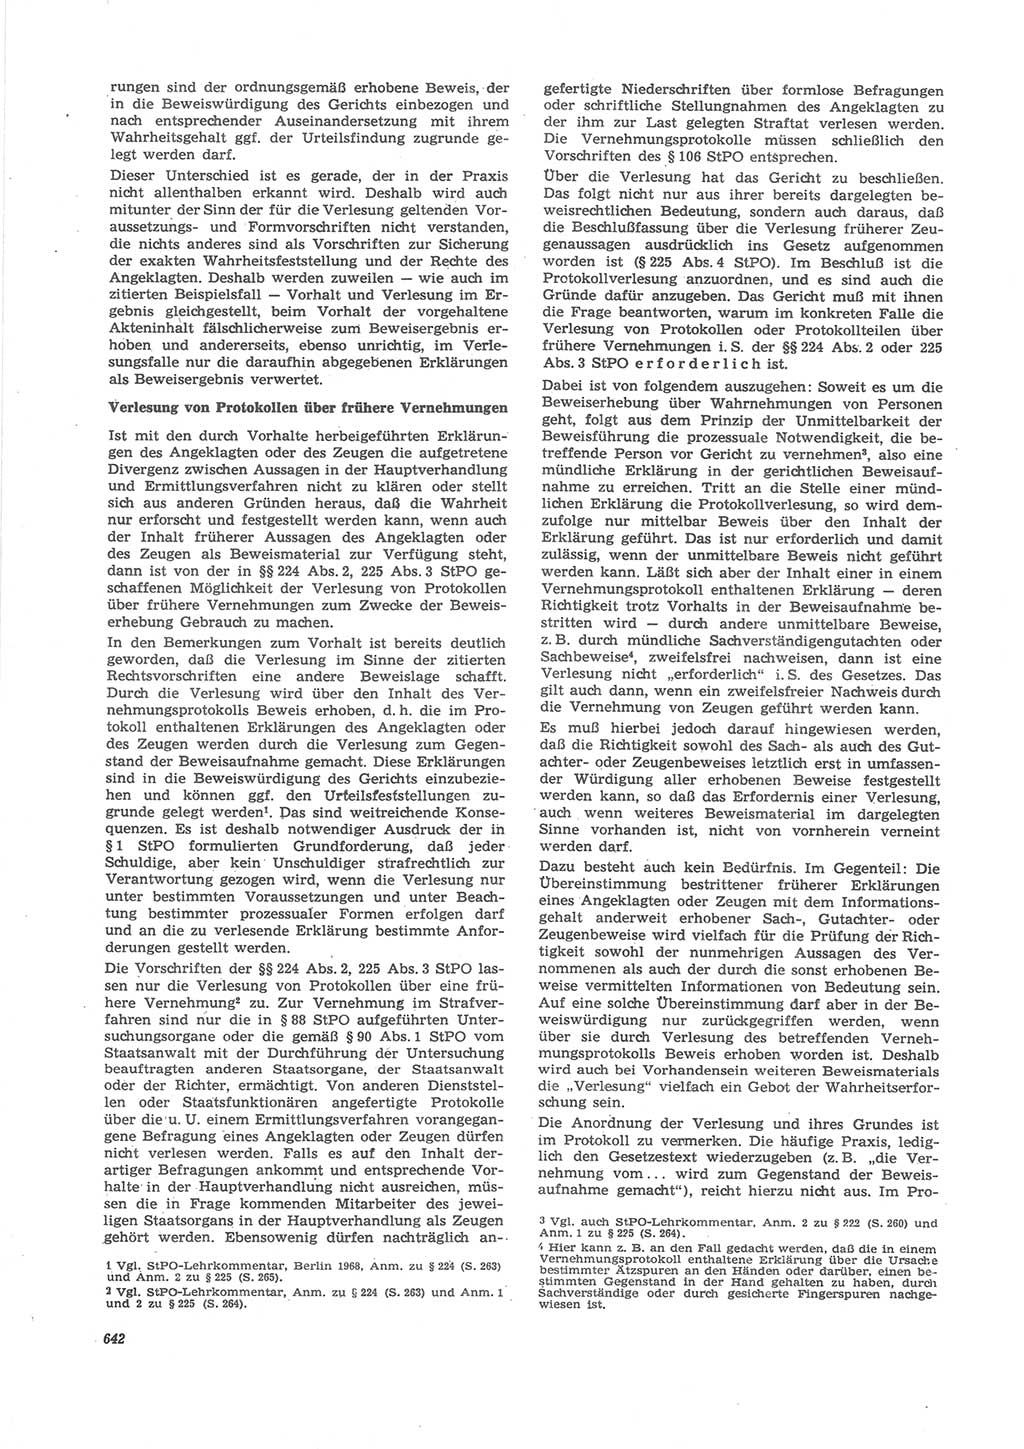 Neue Justiz (NJ), Zeitschrift für Recht und Rechtswissenschaft [Deutsche Demokratische Republik (DDR)], 24. Jahrgang 1970, Seite 642 (NJ DDR 1970, S. 642)